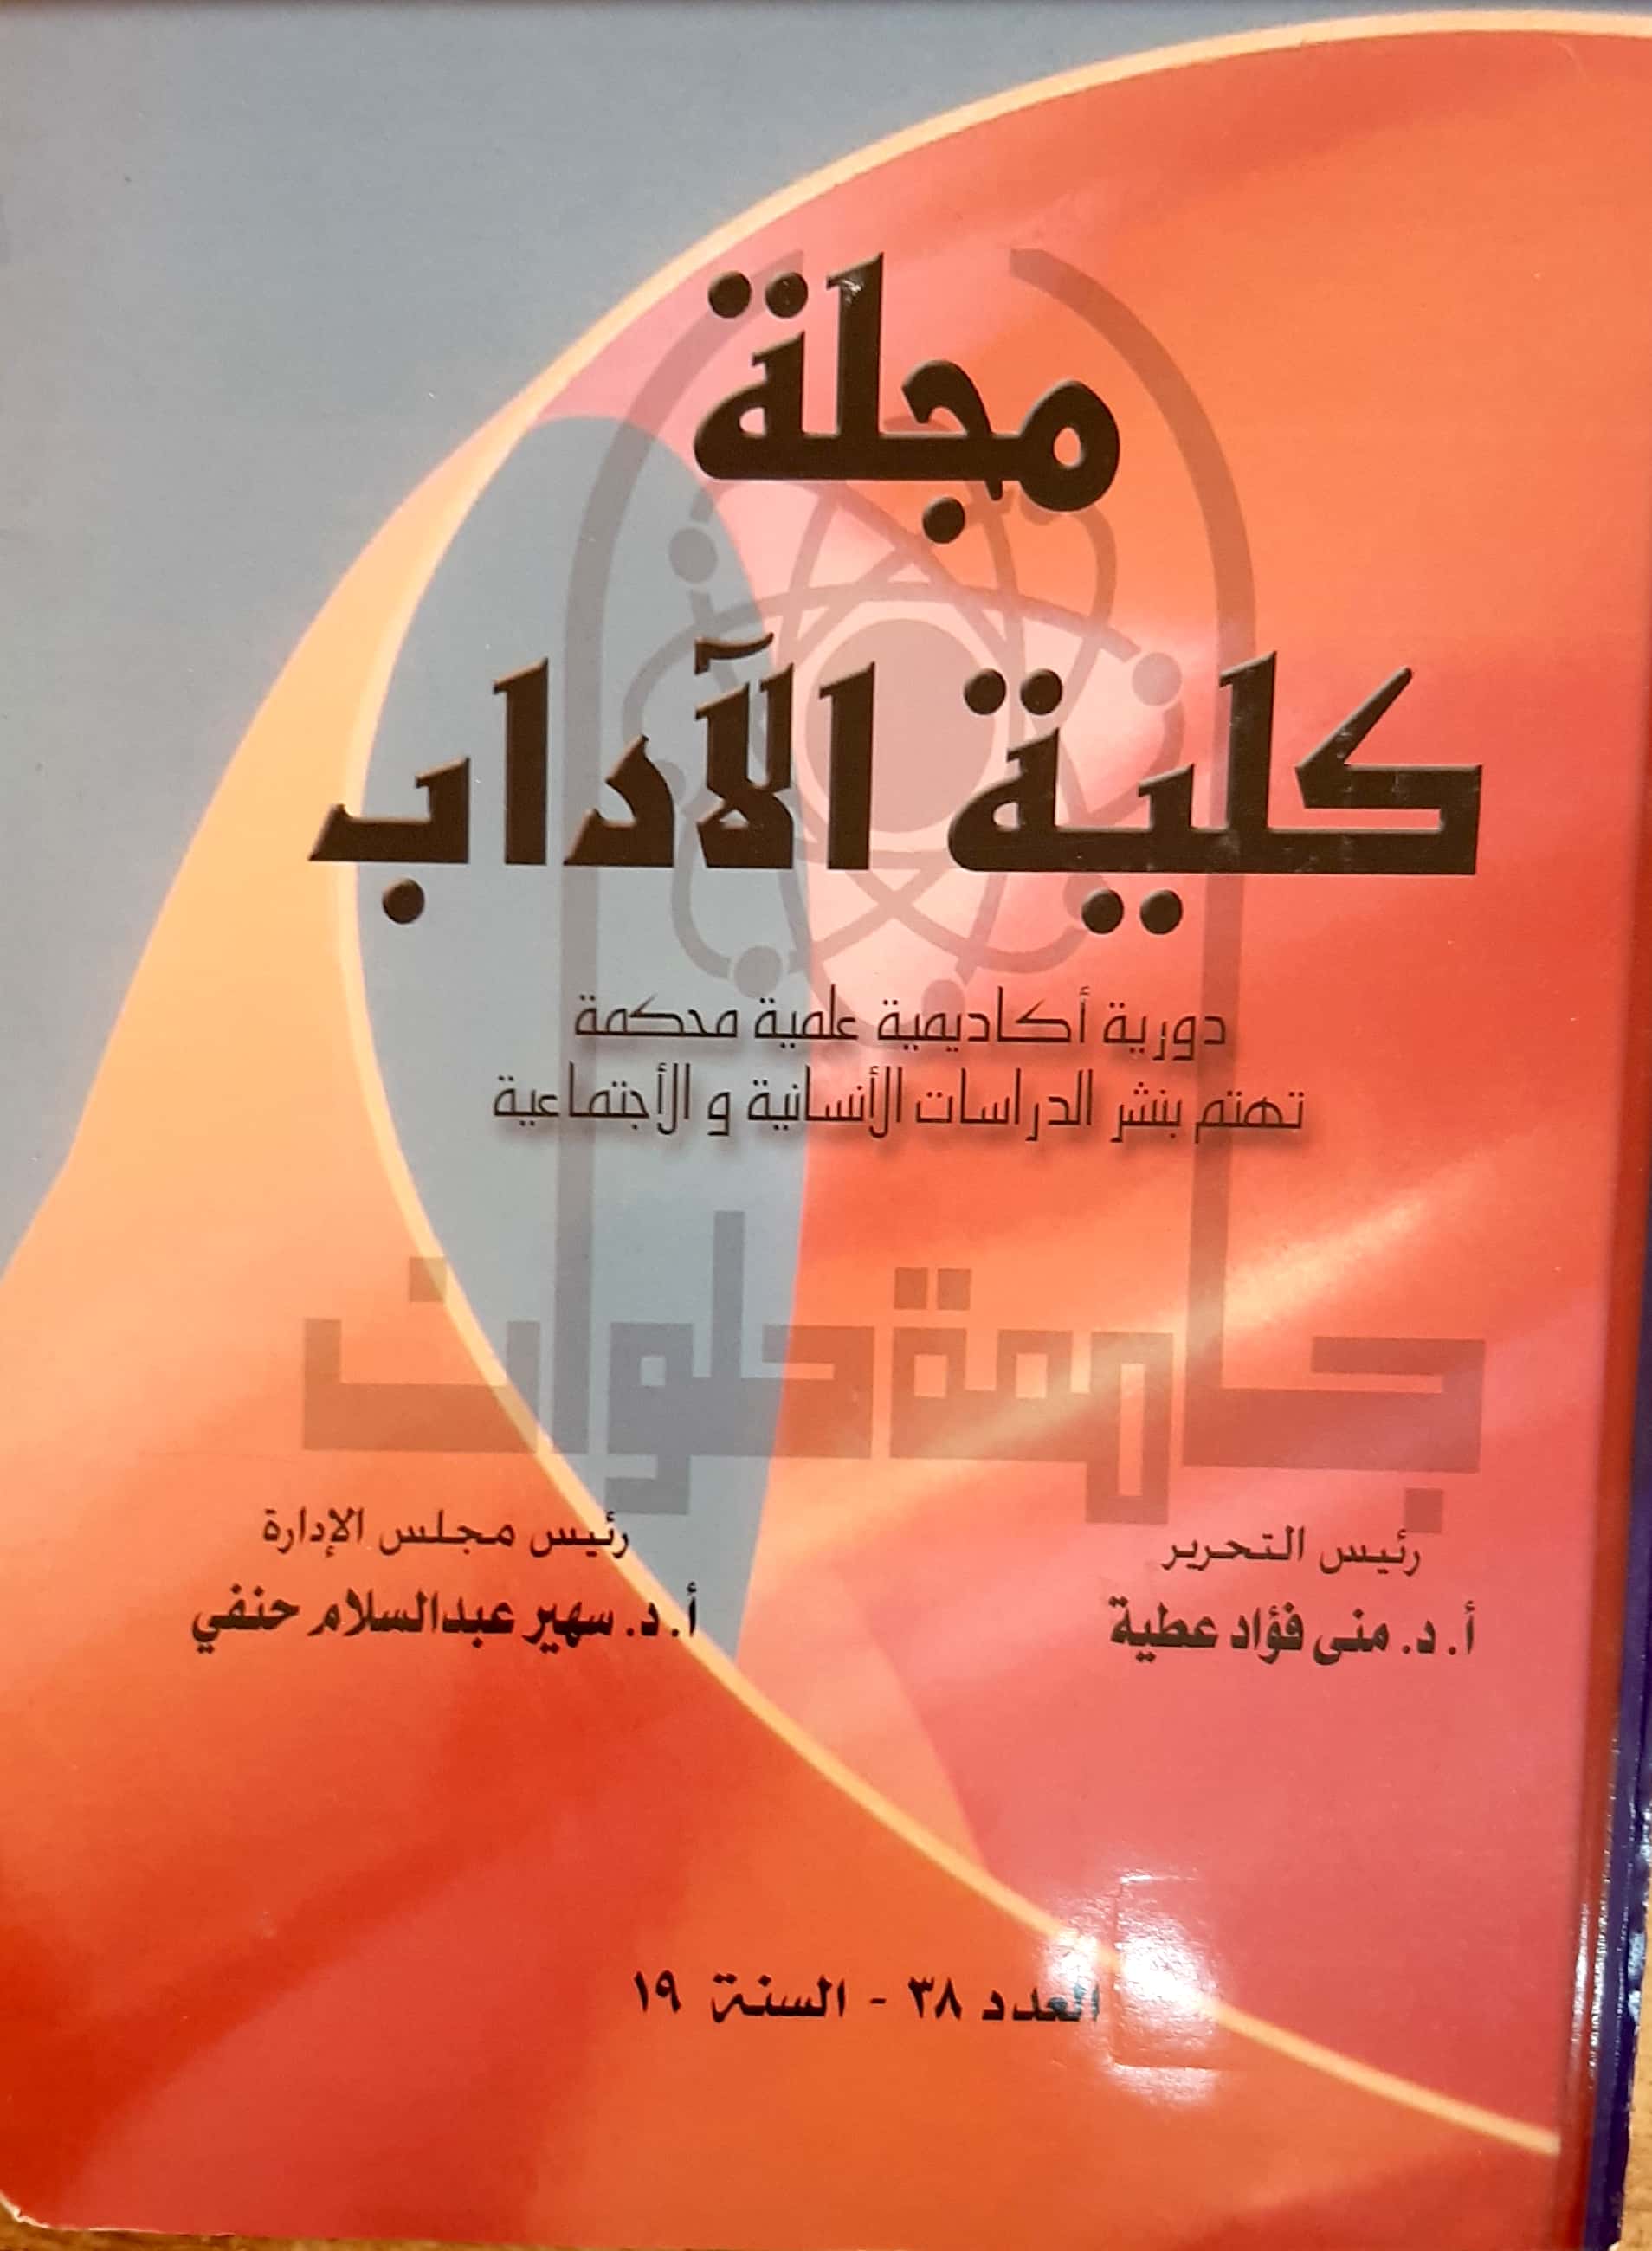 مجلة کلية الأداب - جامعة حلوان